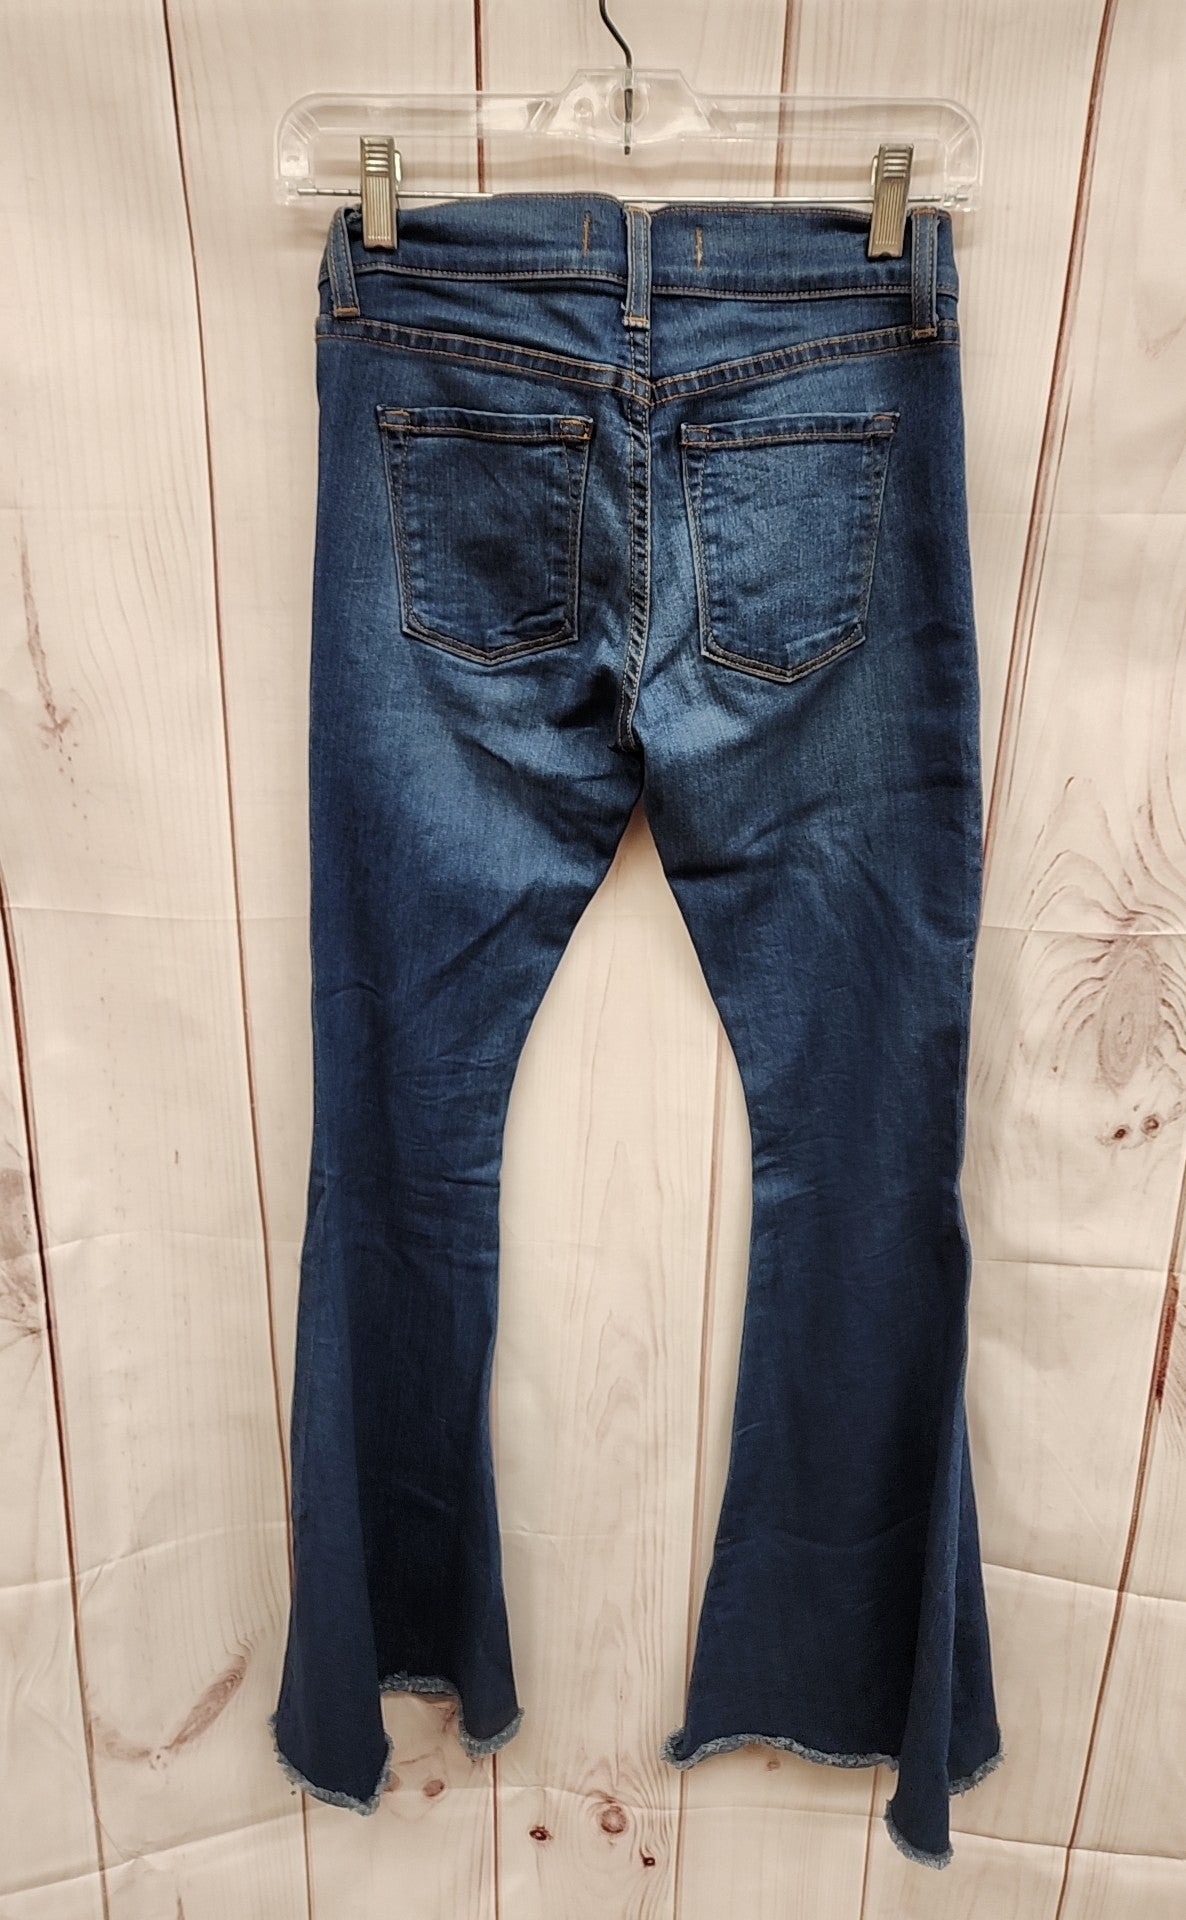 Free People Women's Size 26 (1-2) Blue Jeans